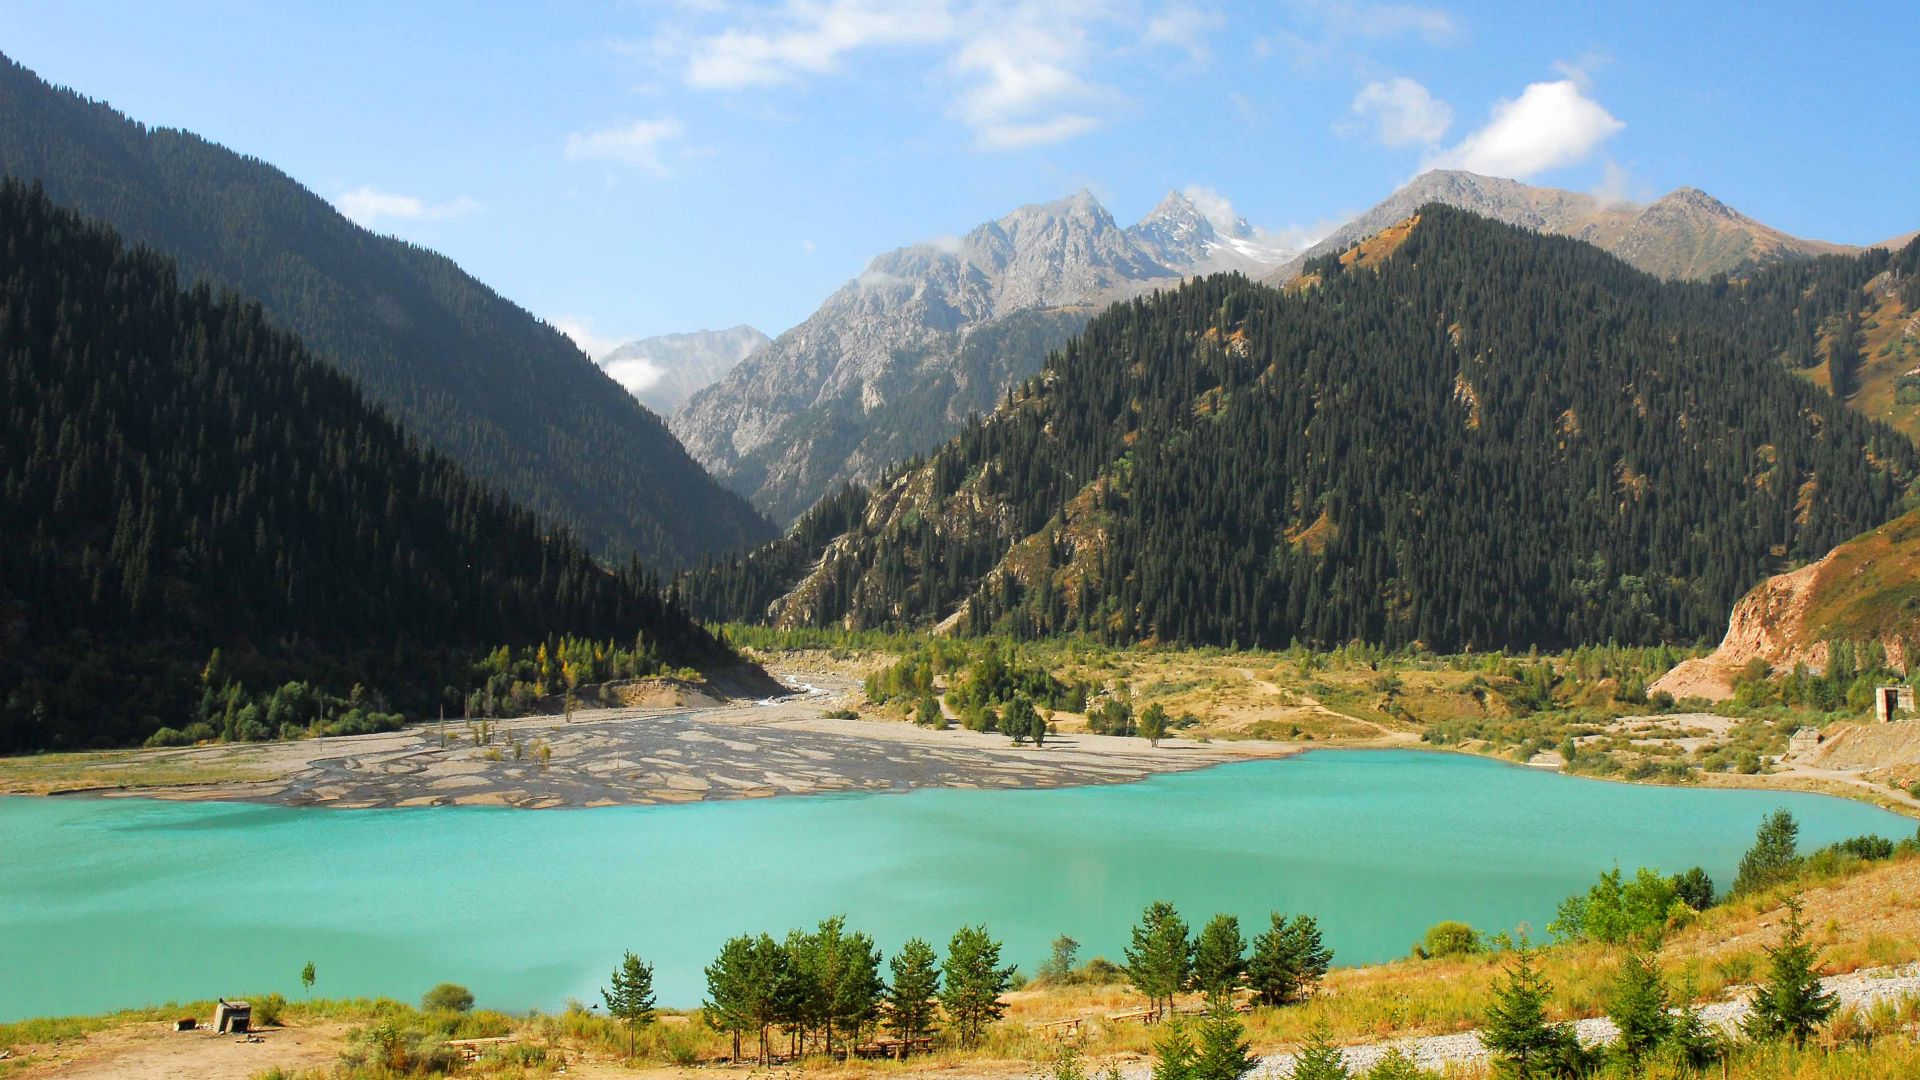 Озеро Иссык-Куль, Кыргызстан, горы, Lake Issyk-Kul, Kyrgyzstan, mountains, forest, 4k (horizontal)